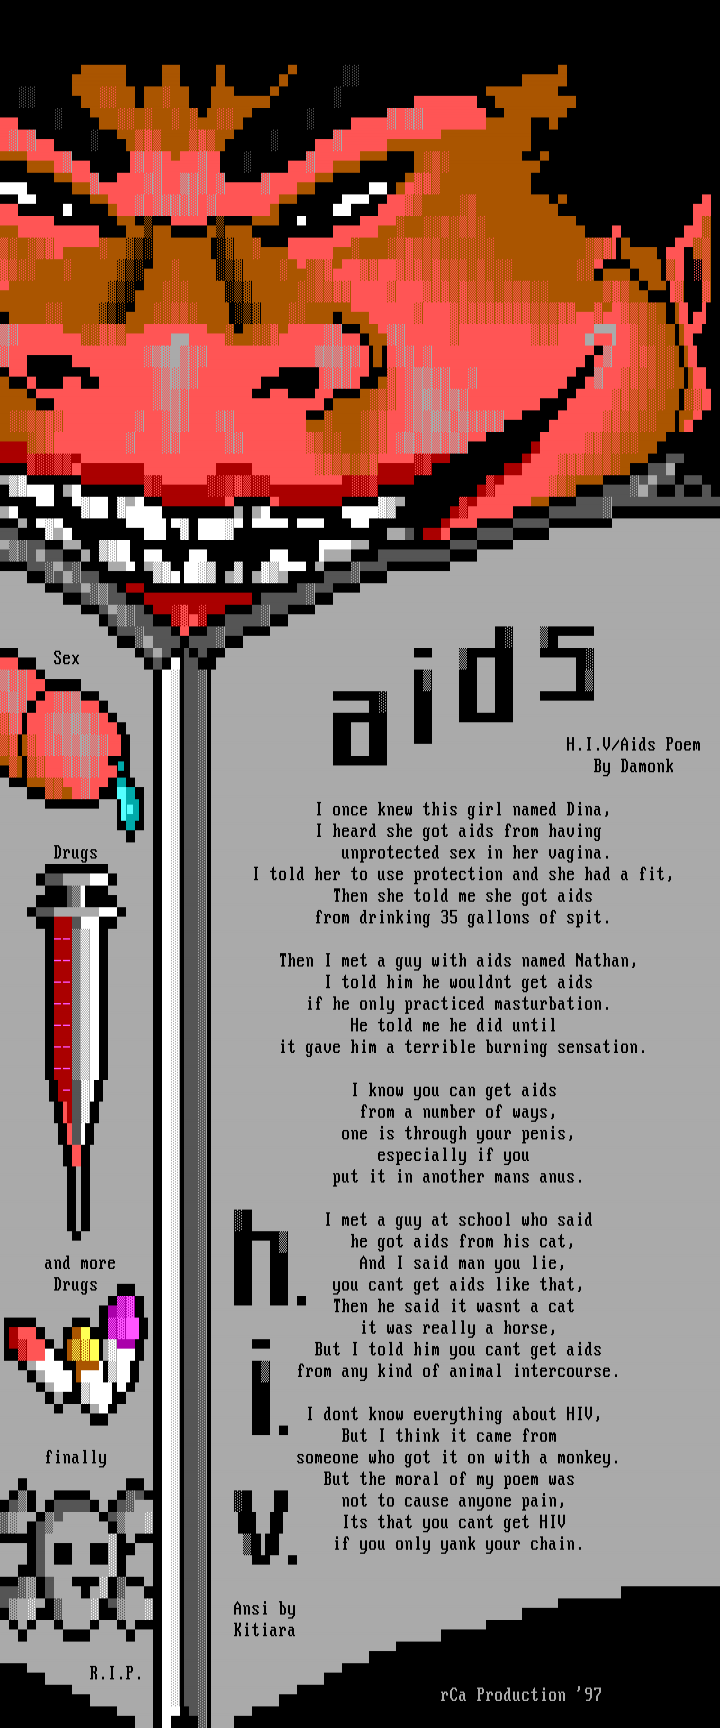 Aids/HIV by kit&damonk